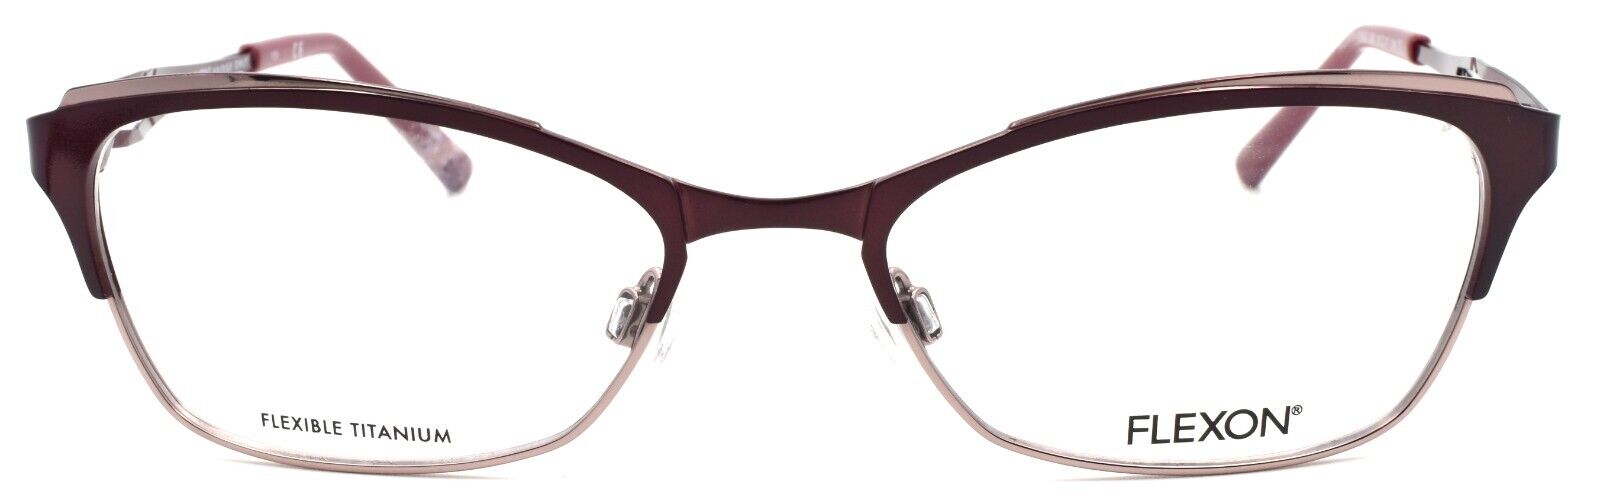 2-Flexon W3000 505 Women's Eyeglasses Frames Plum 51-17-135 Titanium Bridge-883900202848-IKSpecs